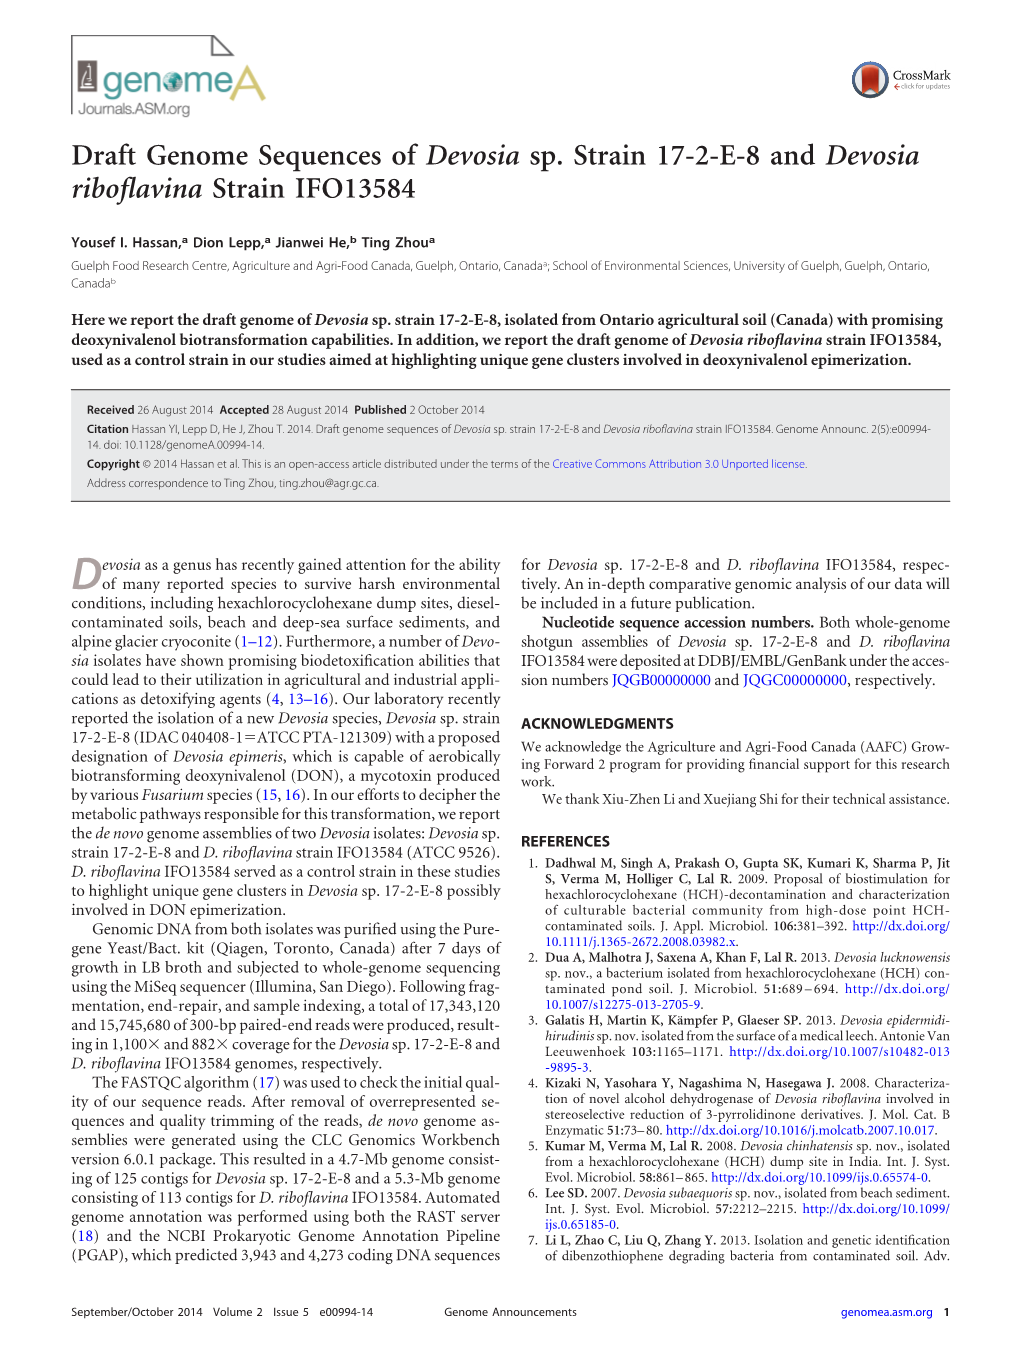 Draft Genome Sequences of Devosia Sp. Strain 17-2-E-8 and Devosia Riboﬂavina Strain IFO13584